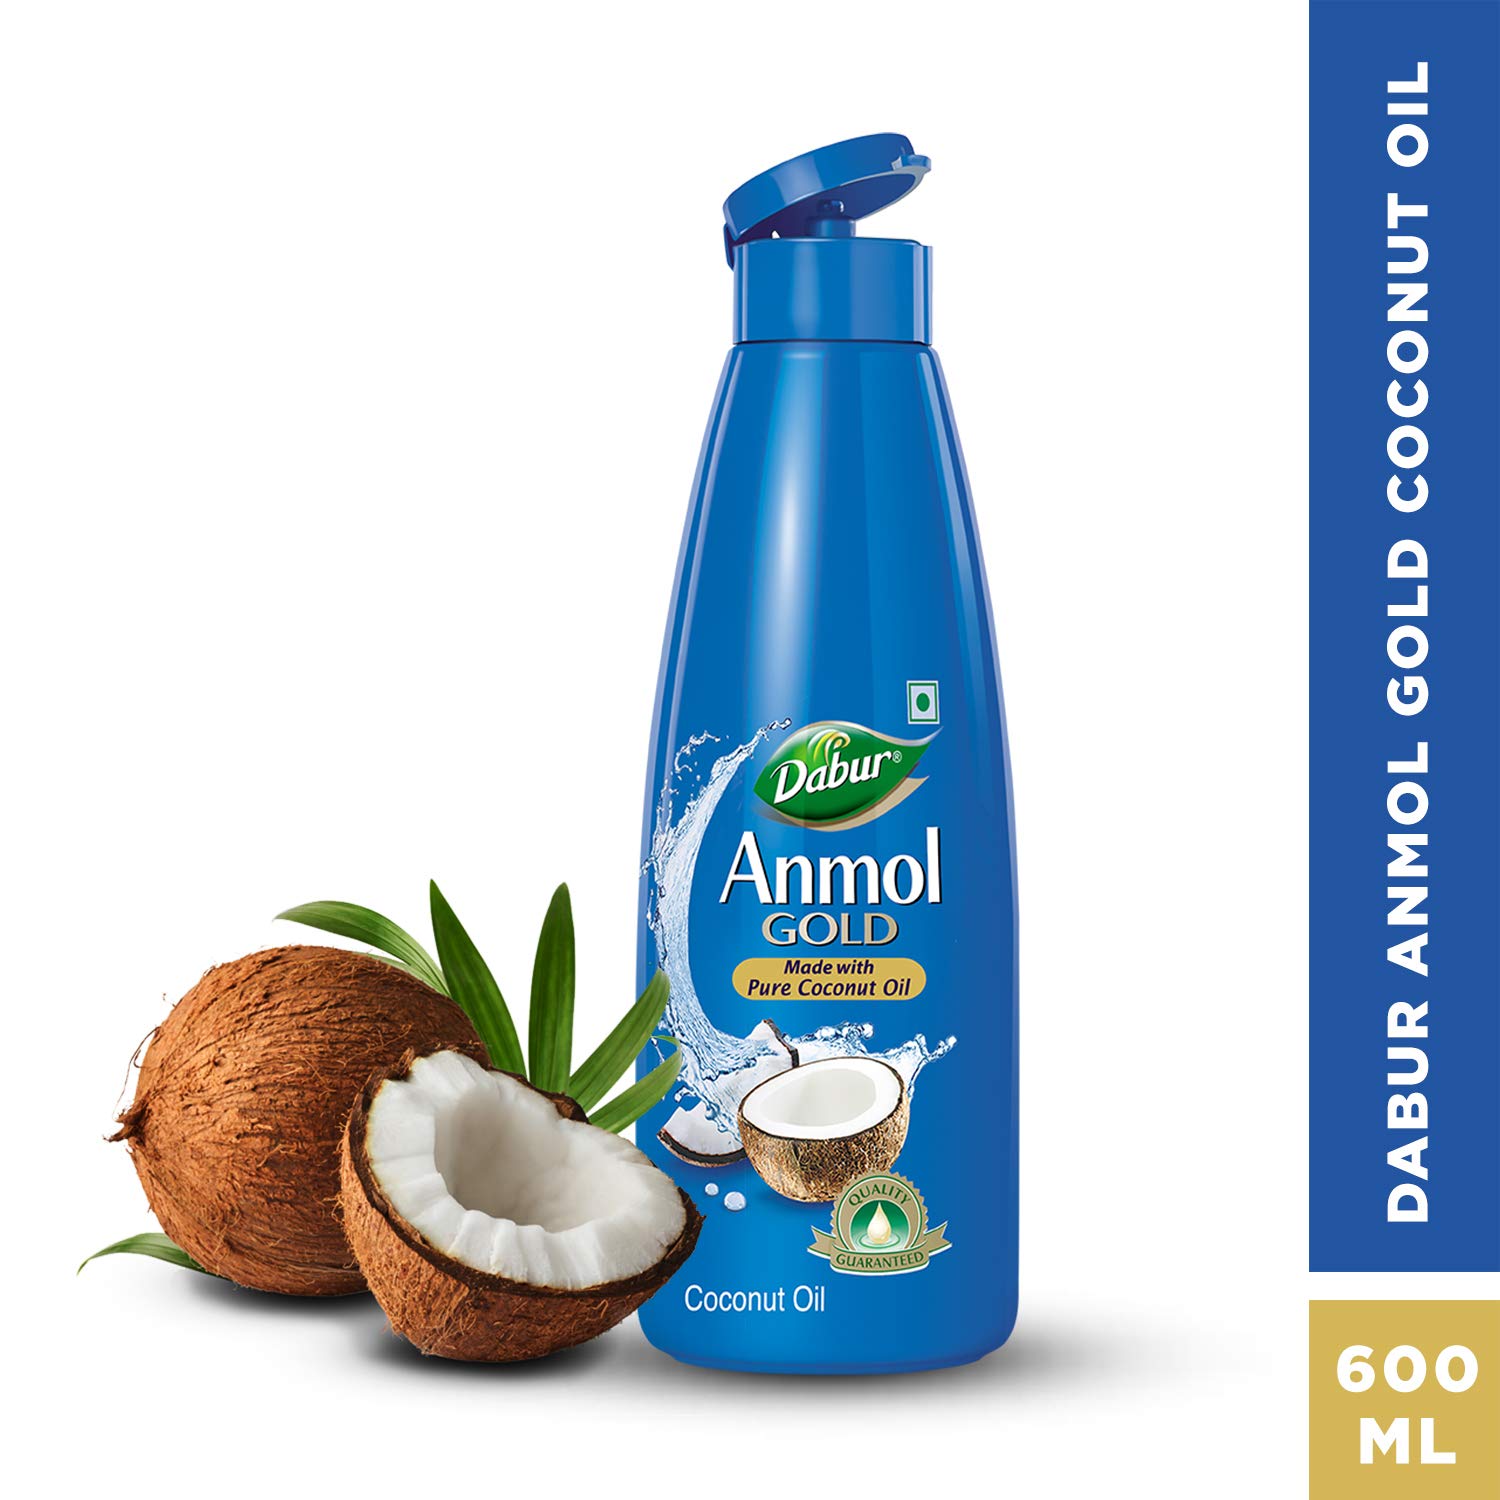 Dabur Anmol Gold 100 % Pure Coconut Oil, 600 ml